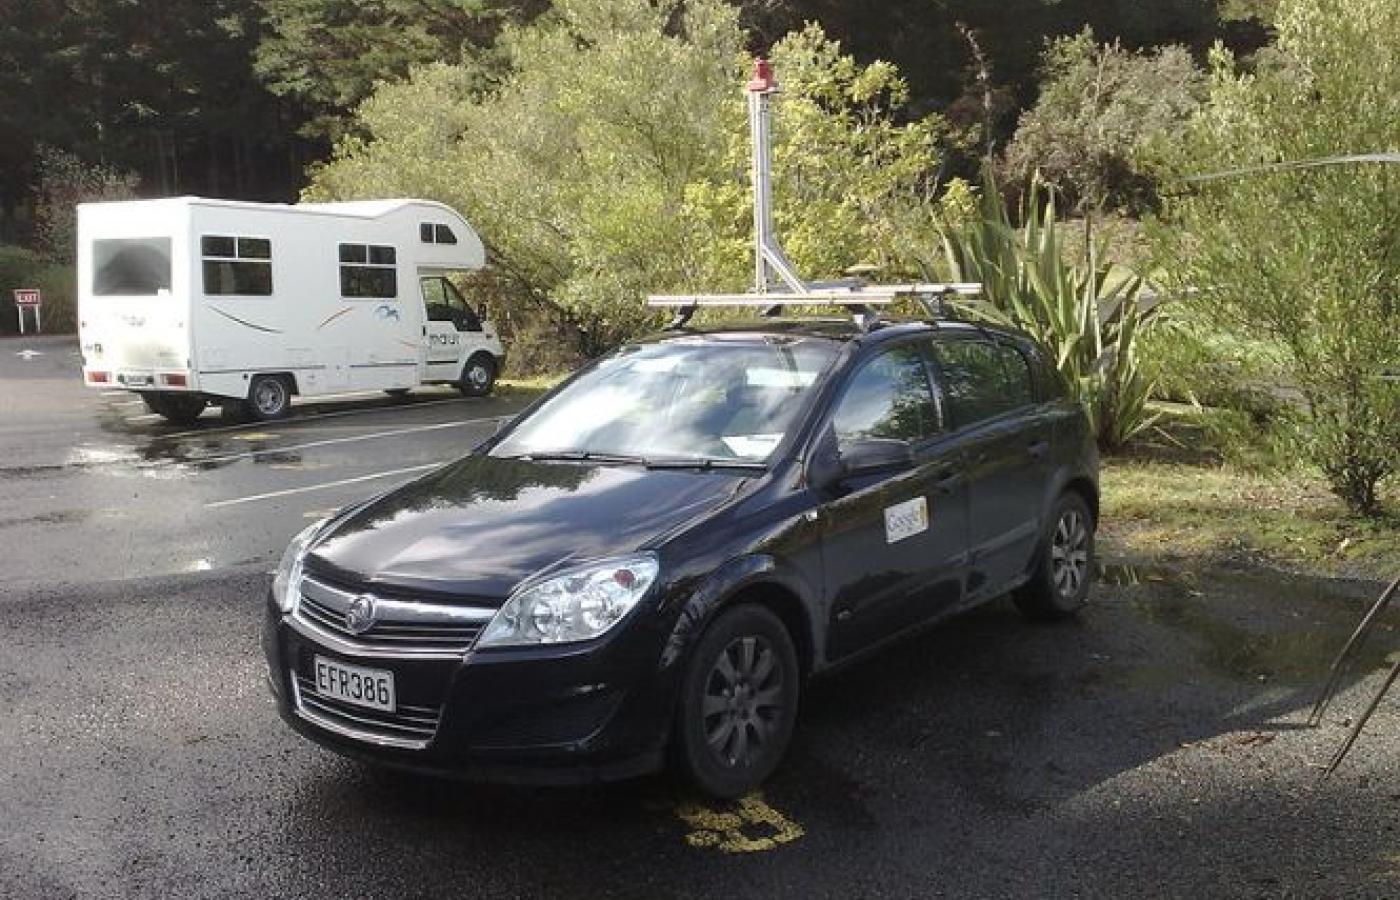 Samochód Google Street View w Nowej Zelandii. Takie samochody są już też w Polsce.